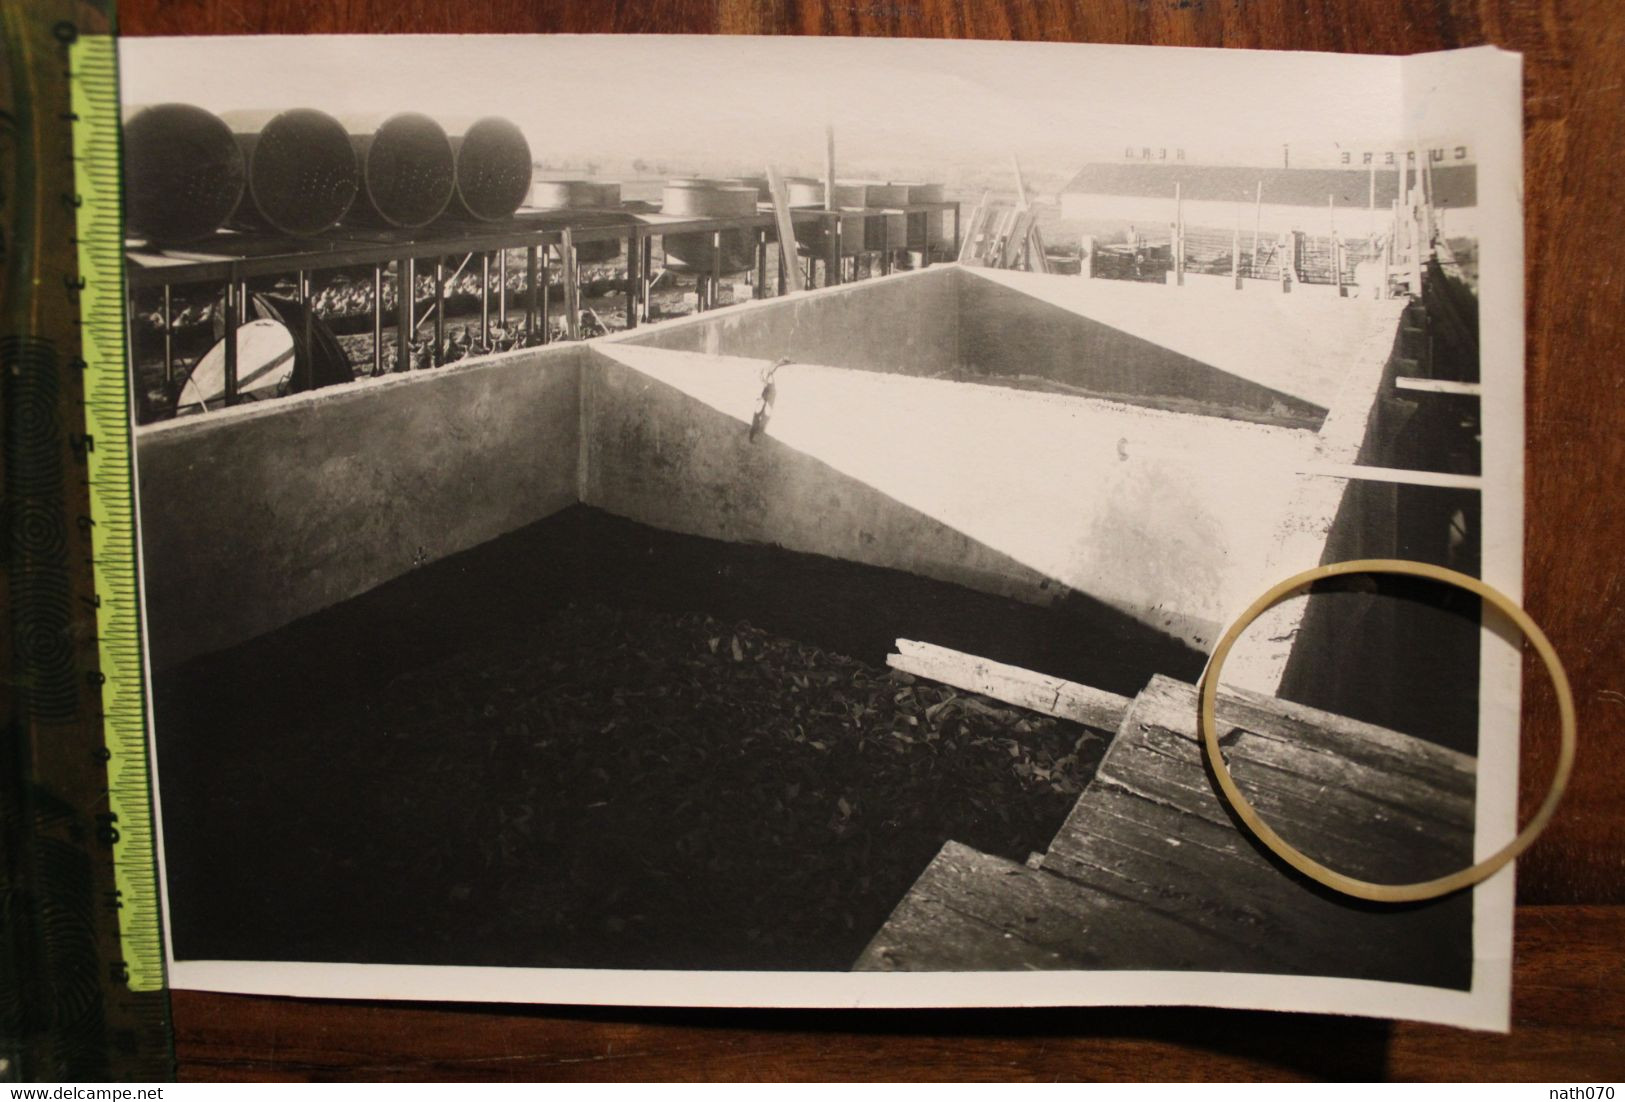 1928 Muizon (Marne) Usine RENO caoutchouc récupéré Lot de 6 photos dont ouvrières + carton permis de visiter Rare lot !